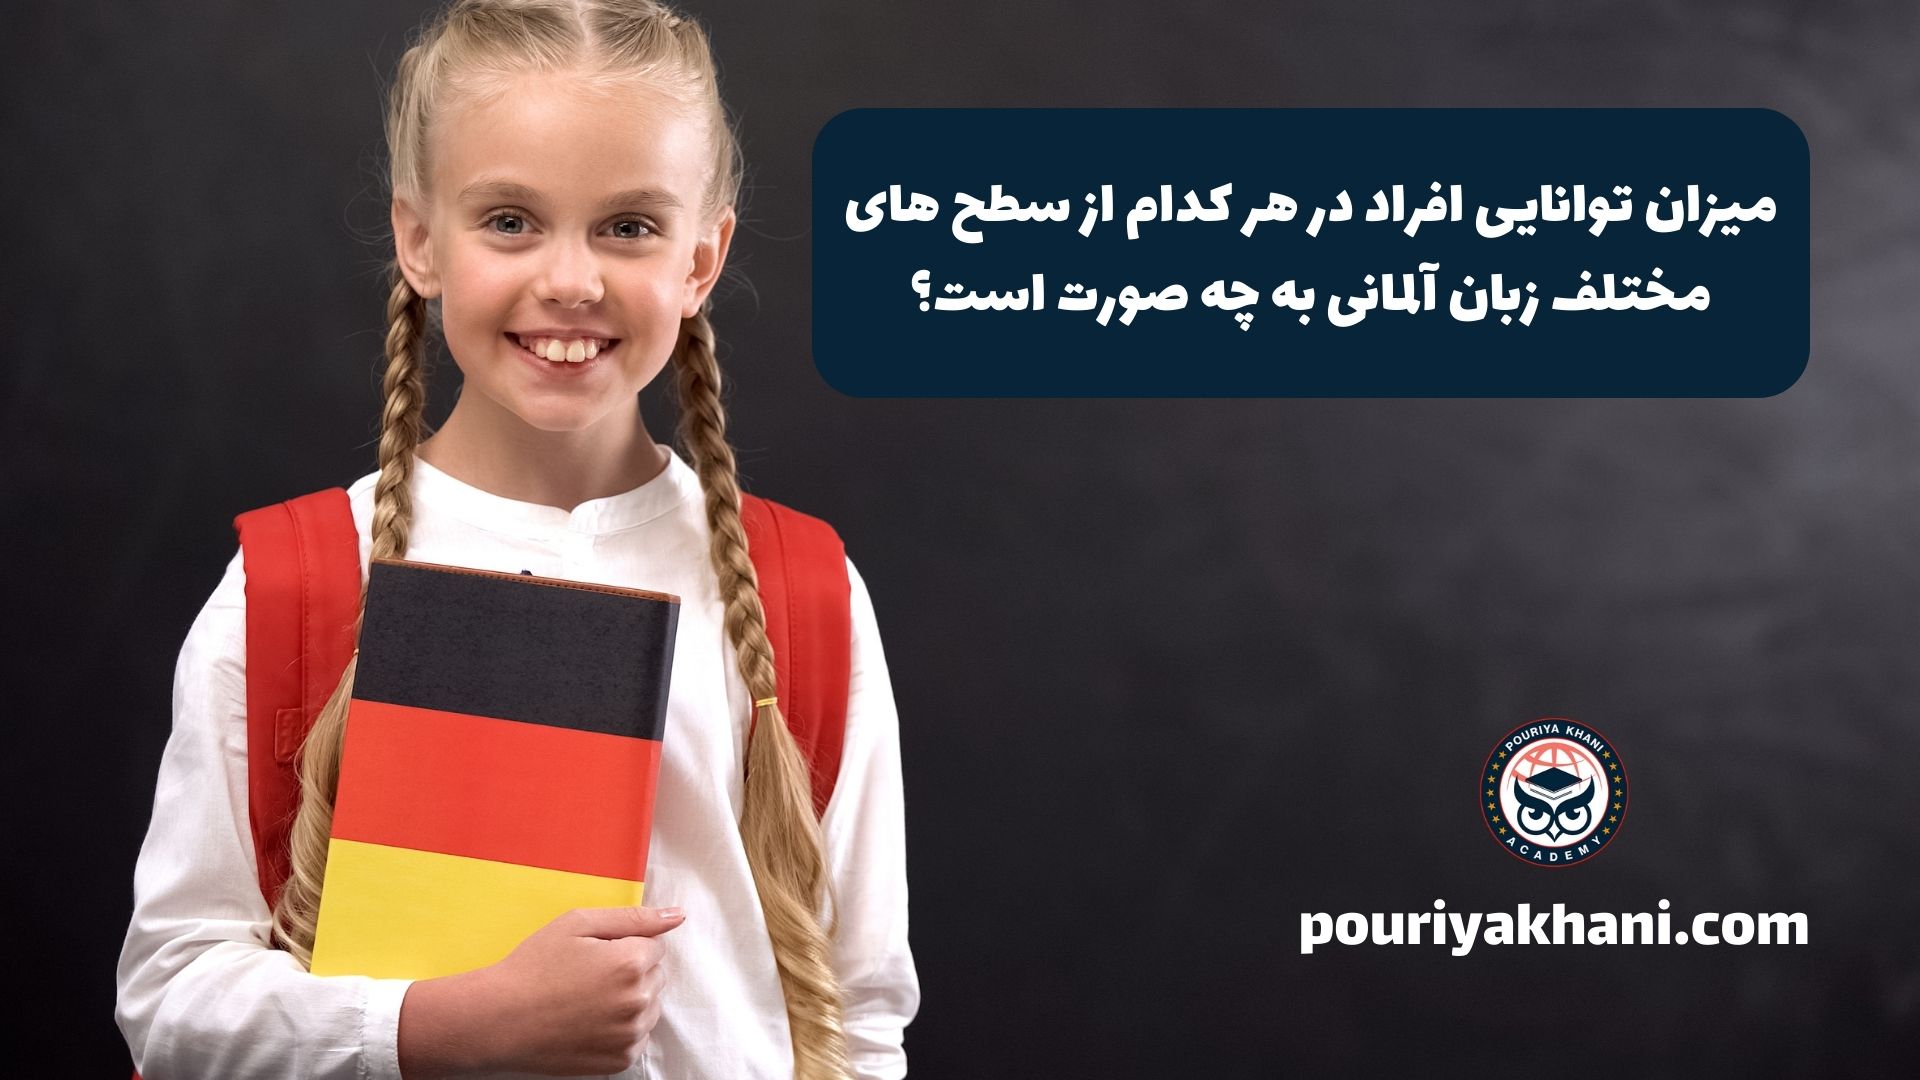 میزان توانایی افراد در هر کدام از سطح های مختلف زبان آلمانی به چه صورت است؟